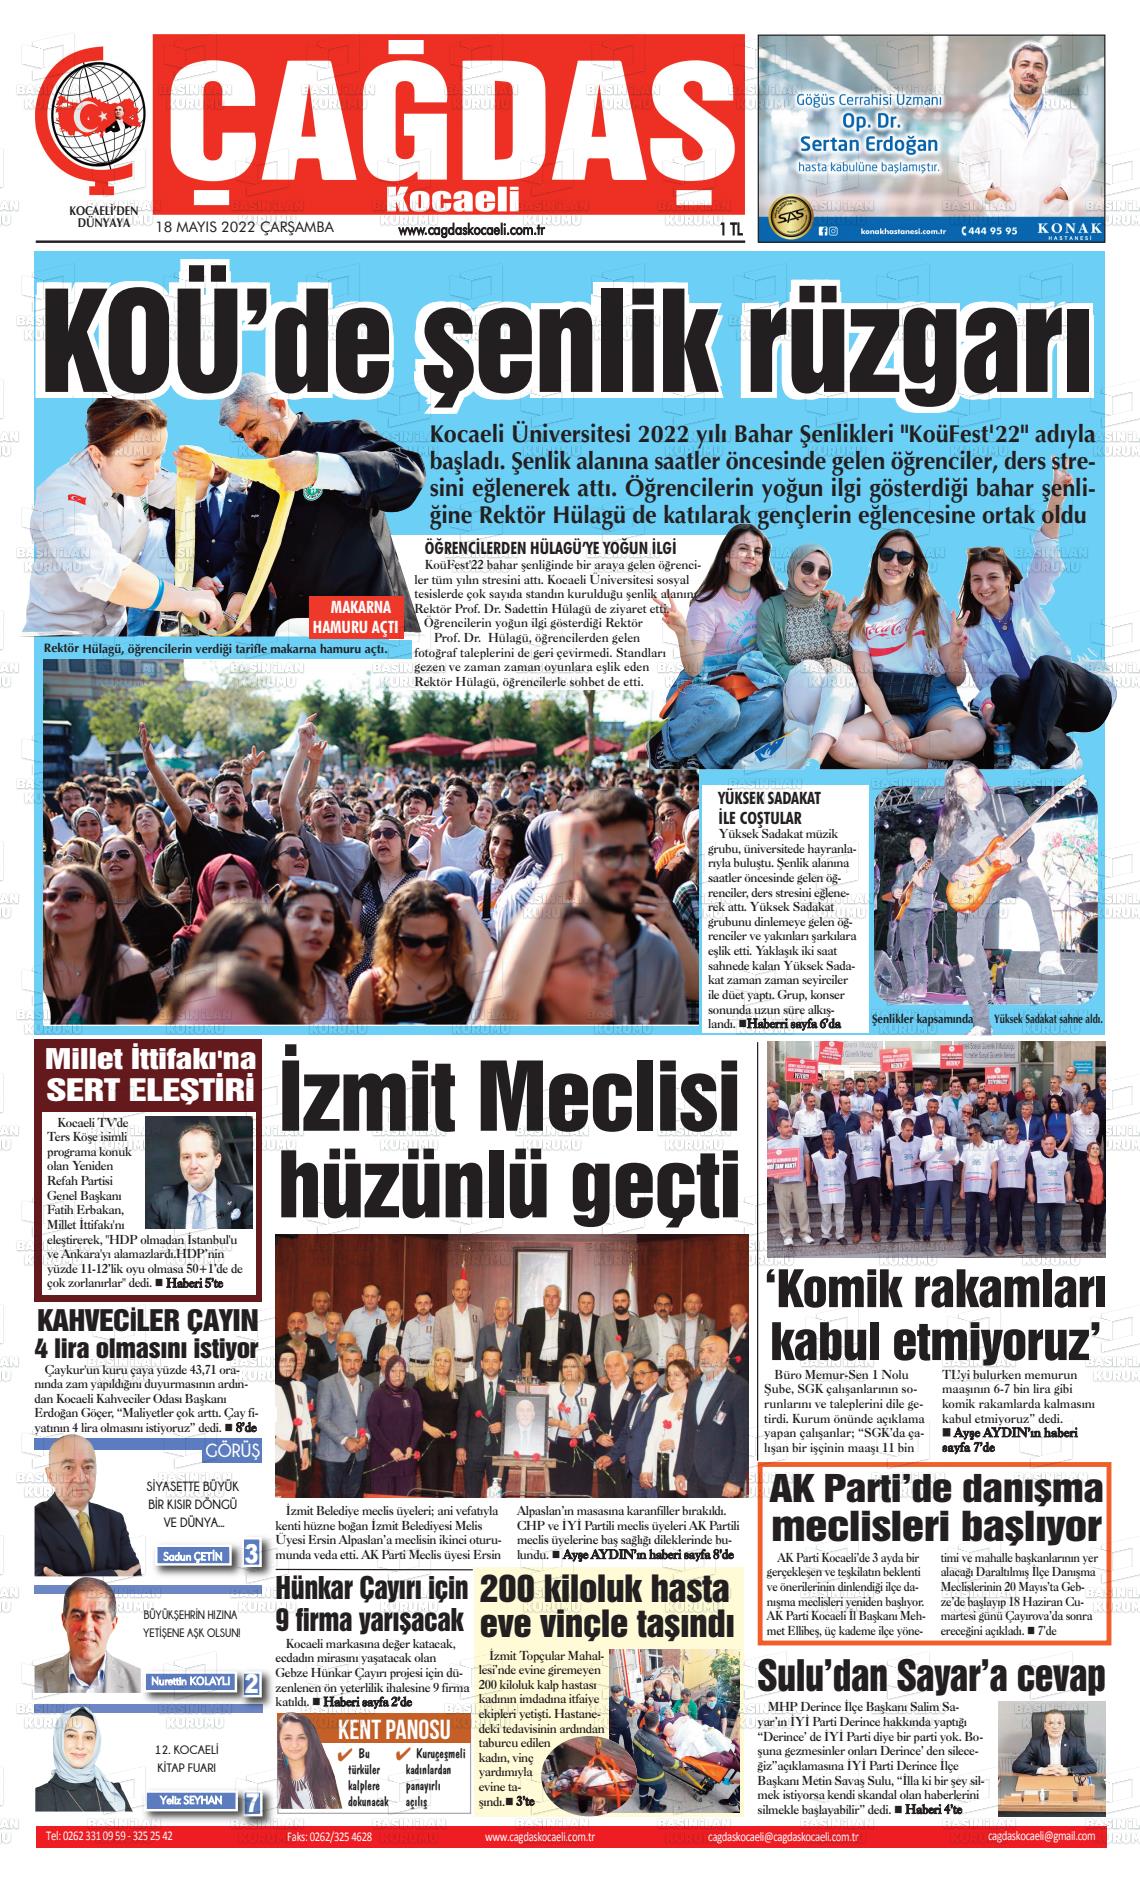 18 Mayıs 2022 Çağdaş Kocaeli Gazete Manşeti